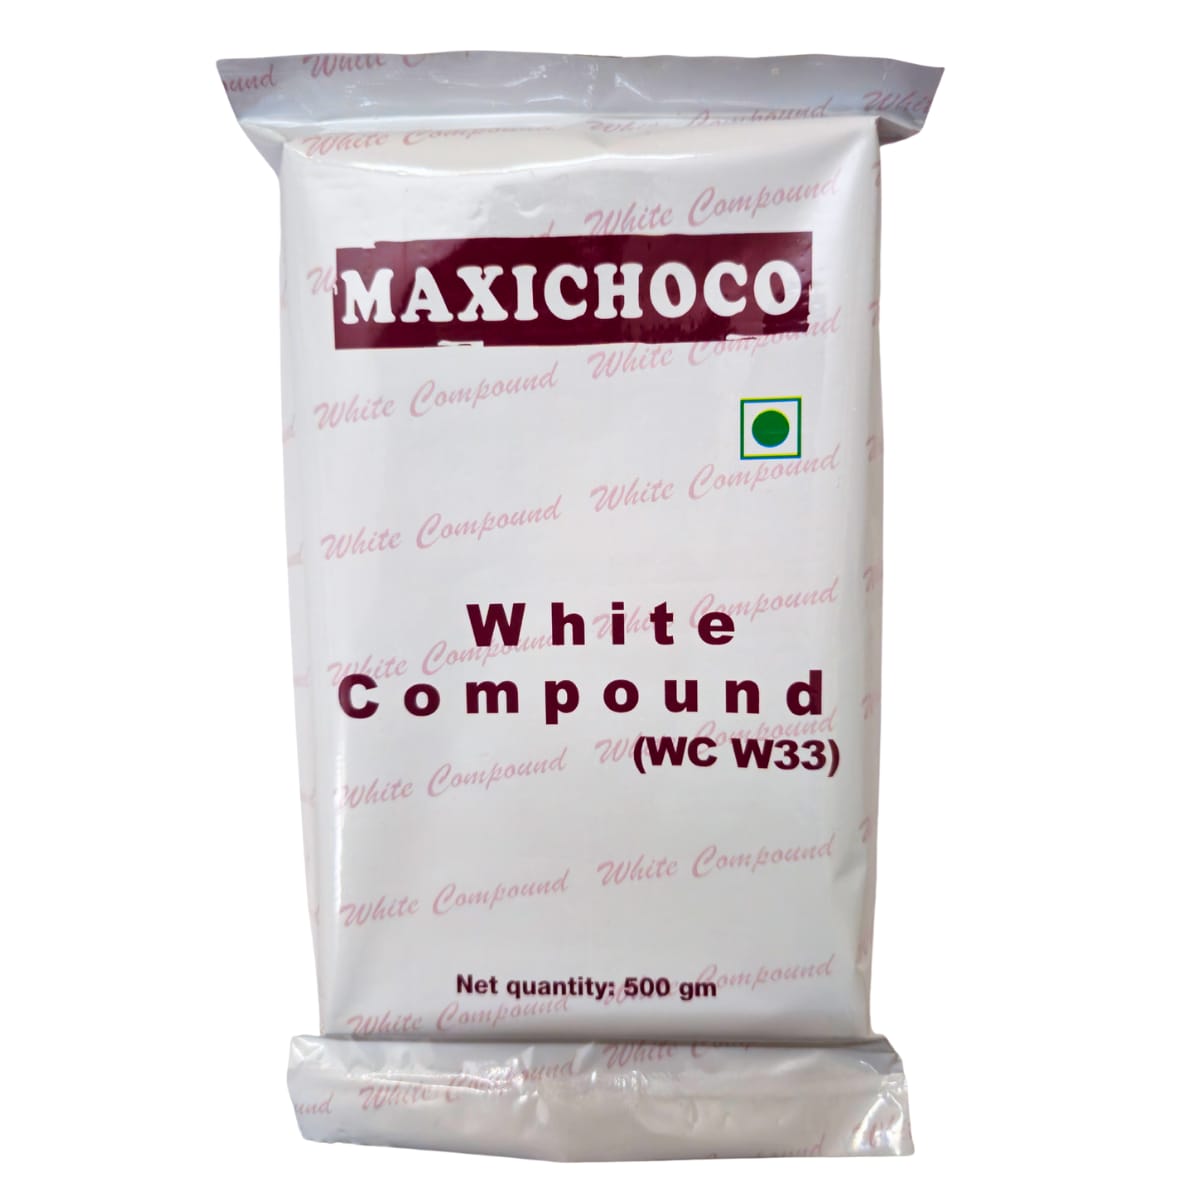 Maxichoco White Compound Image